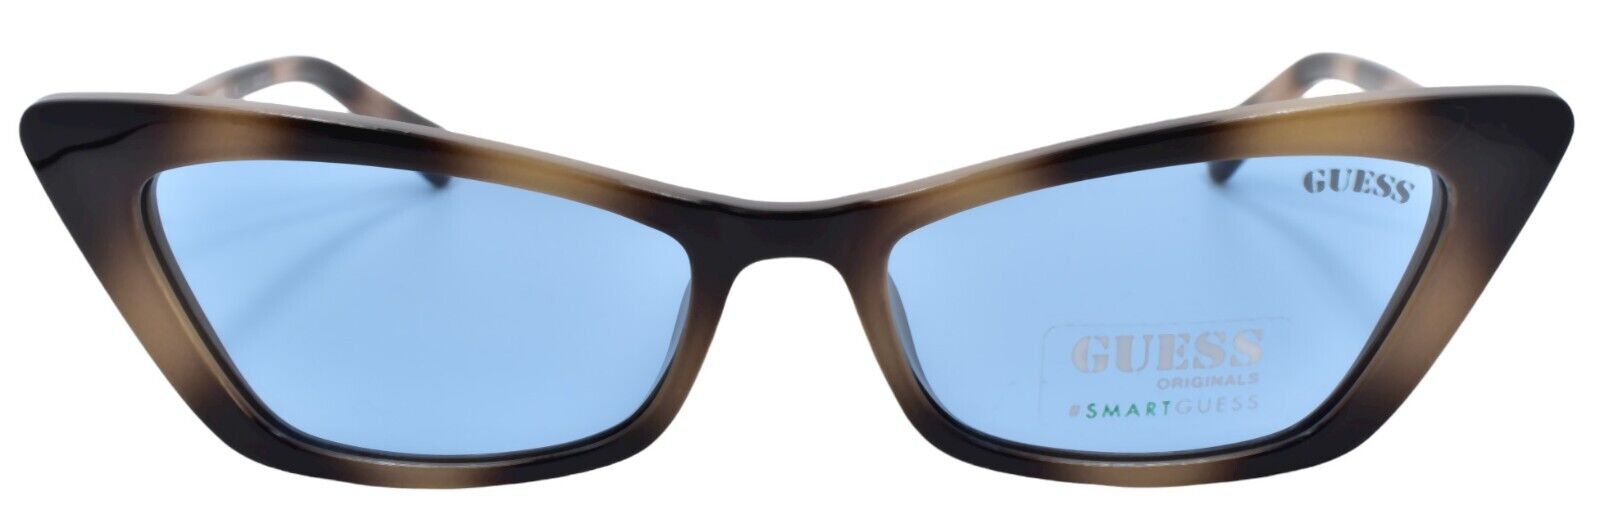 2-GUESS GU8229 53V Women's Sunglasses Cat-eye 53-16-140 Blonde Havana / Blue-889214282026-IKSpecs